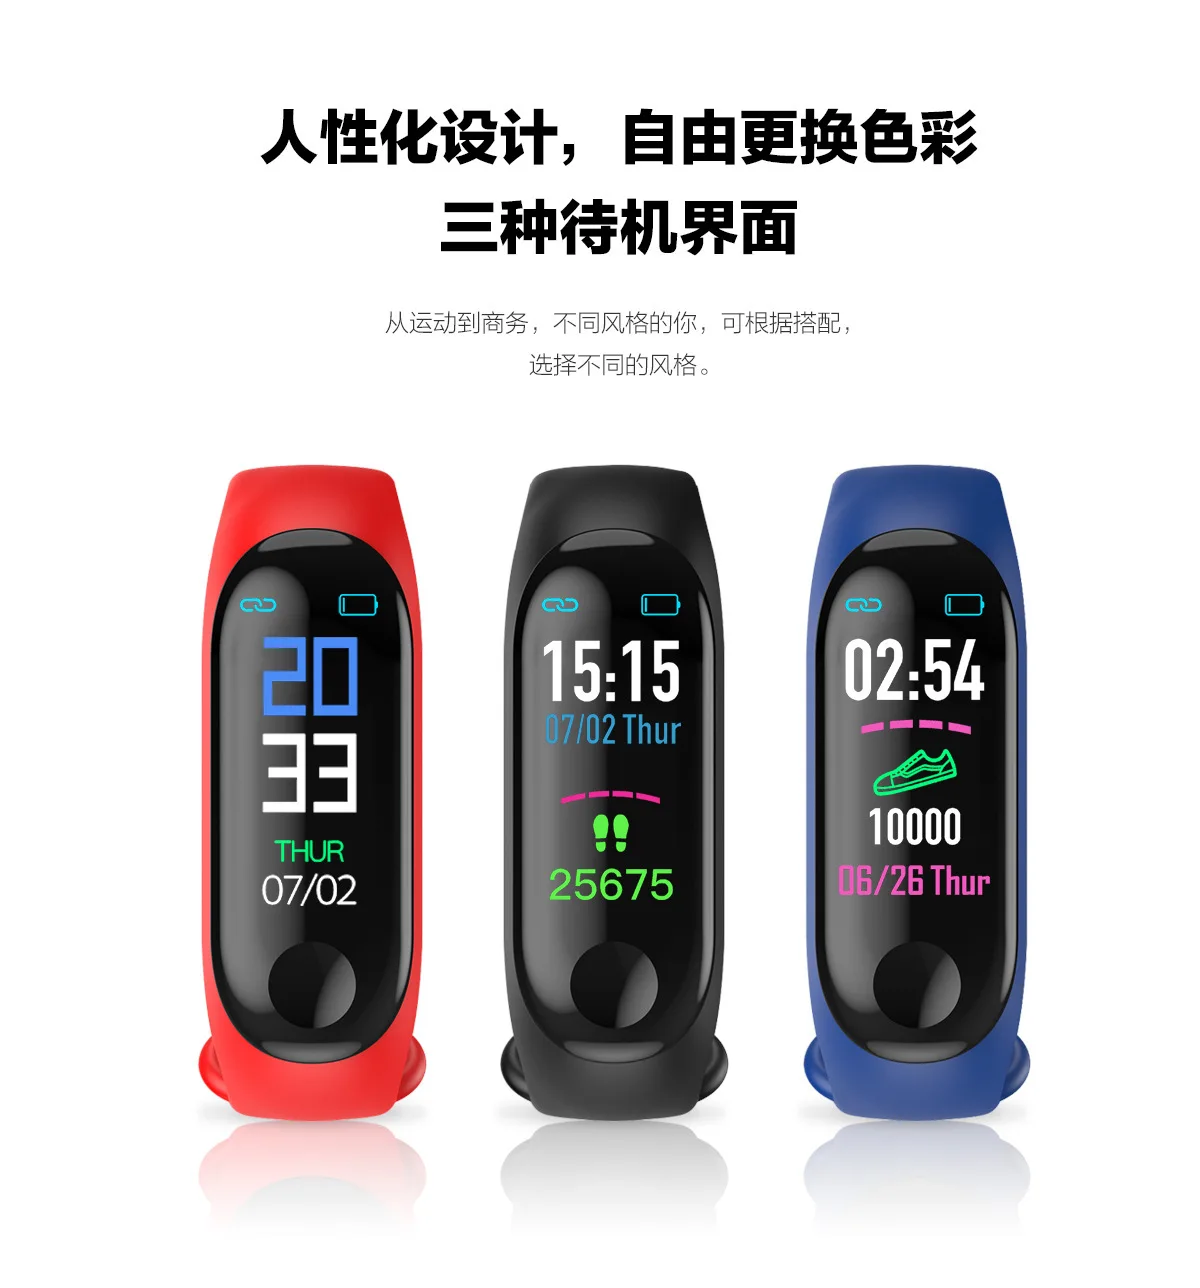 От производителя горячая Распродажа M3 умный Браслет мониторинг сна информация Push Bluetooth спортивный браслет цветной экран браслет